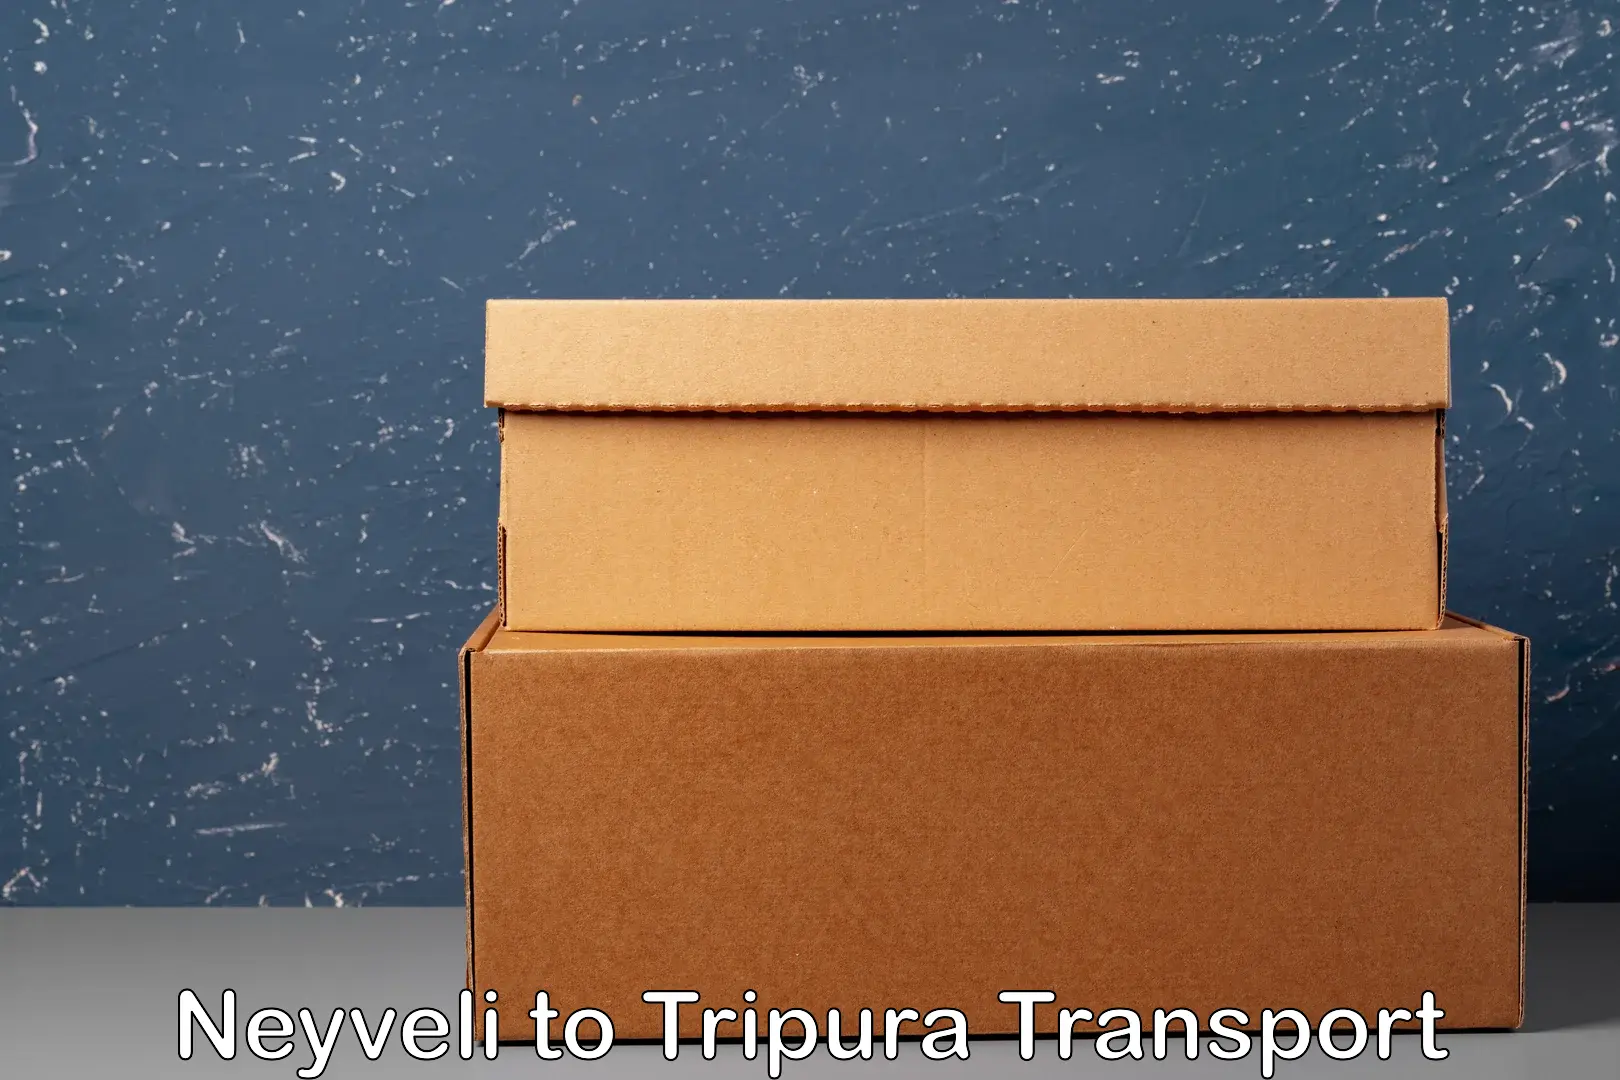 Delivery service Neyveli to Tripura